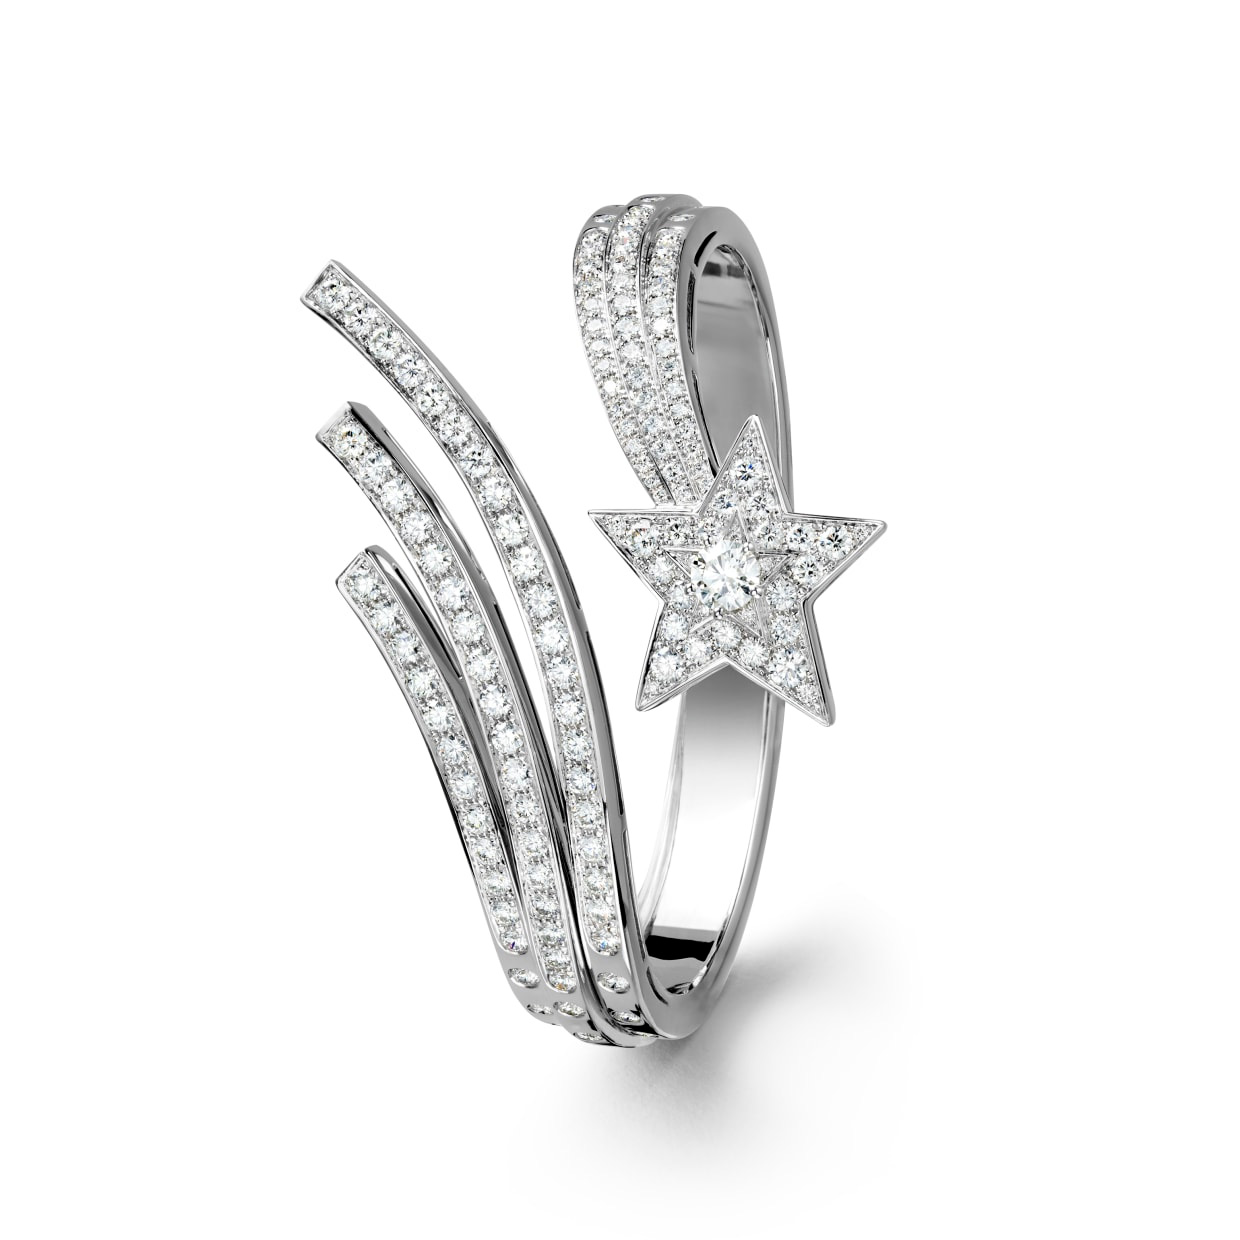 La venta al por mayor crea el oro blanco de la pulsera 18K para requisitos particulares, joyería de los diamantes OEM/ODM 20 años en joyería del OEM